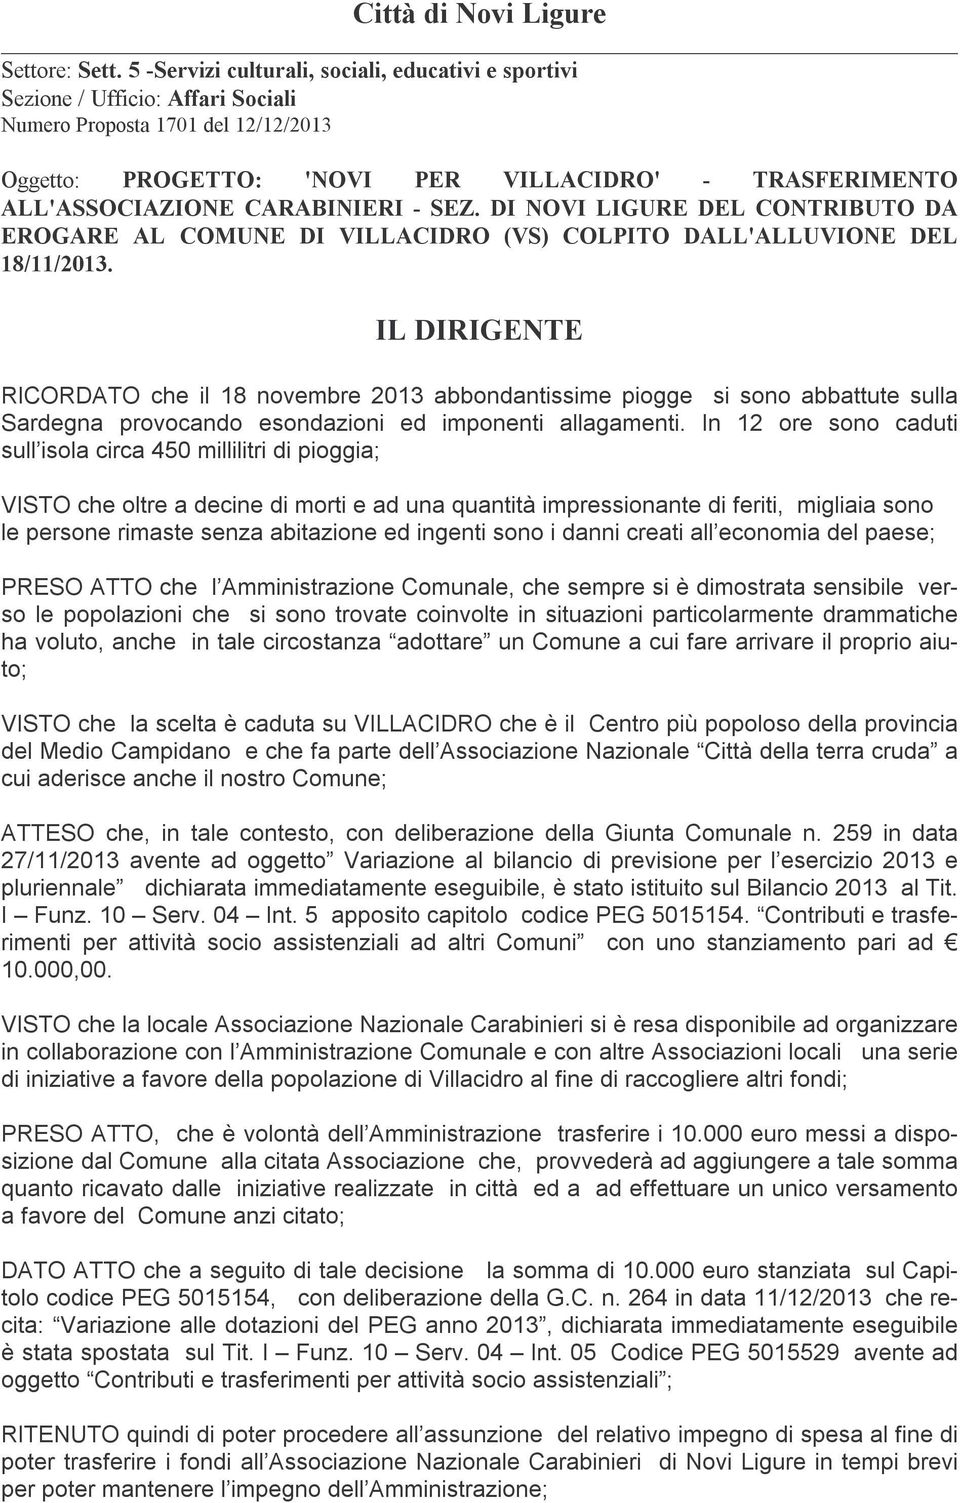 CARABINIERI - SEZ. DI NOVI LIGURE DEL CONTRIBUTO DA EROGARE AL COMUNE DI VILLACIDRO (VS) COLPITO DALL'ALLUVIONE DEL 18/11/2013.